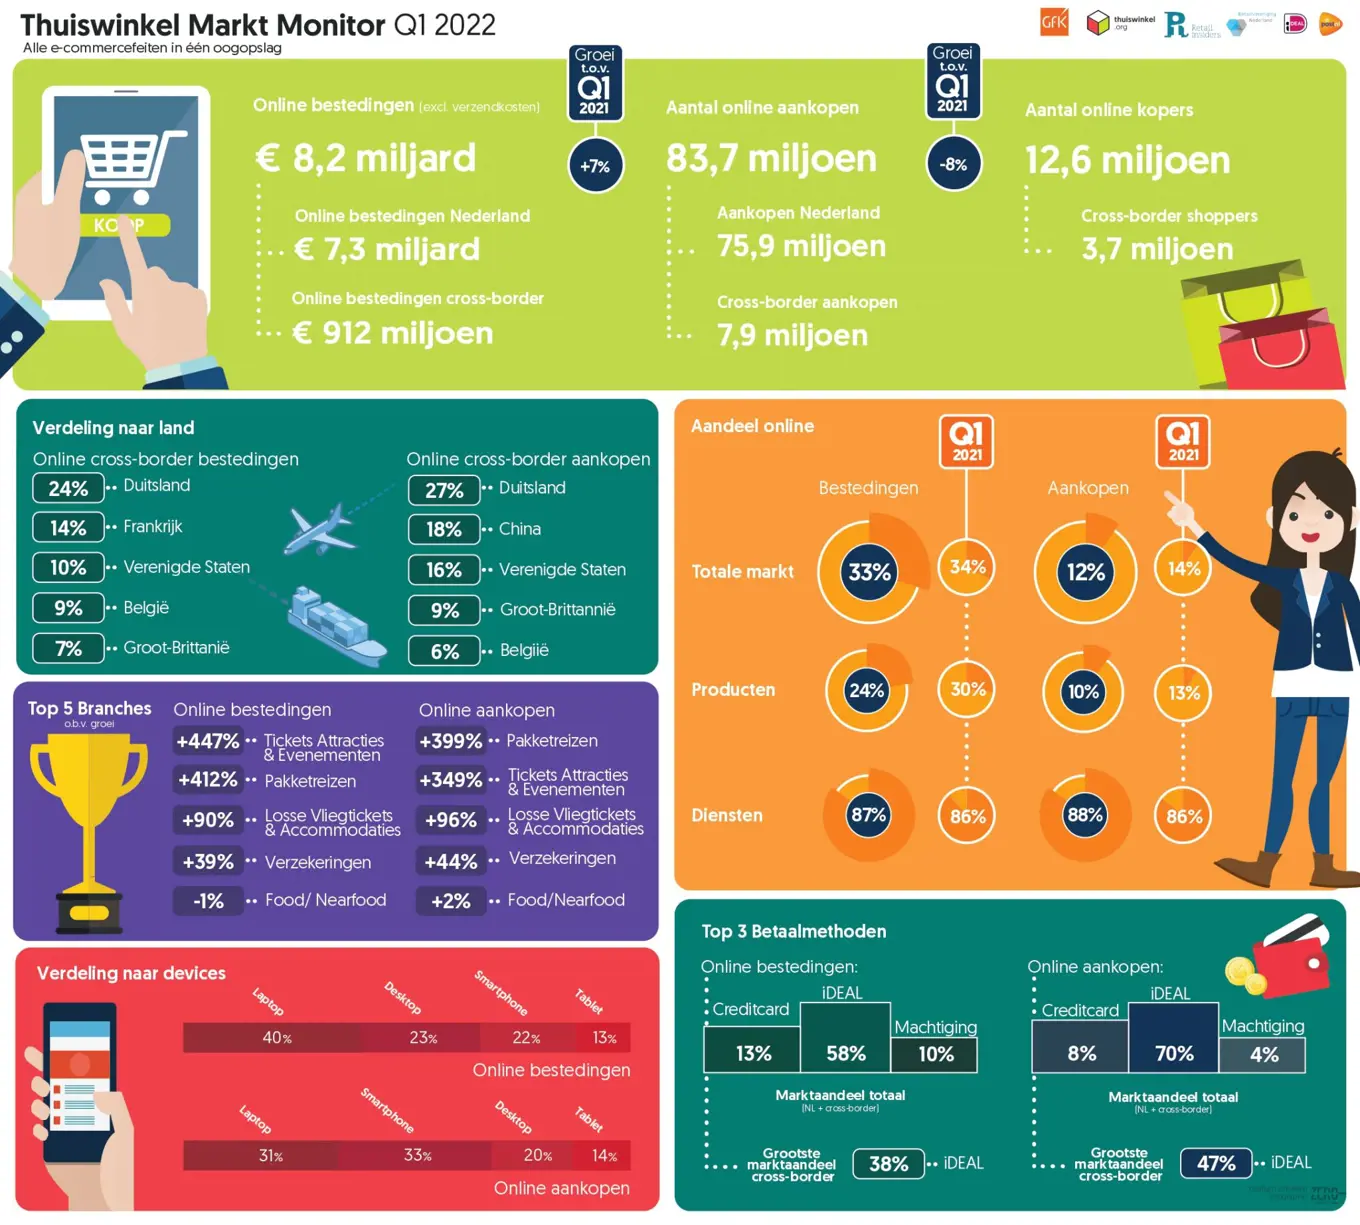 Infographic Thuiswinkel Marktmonitor 2022, Q1.